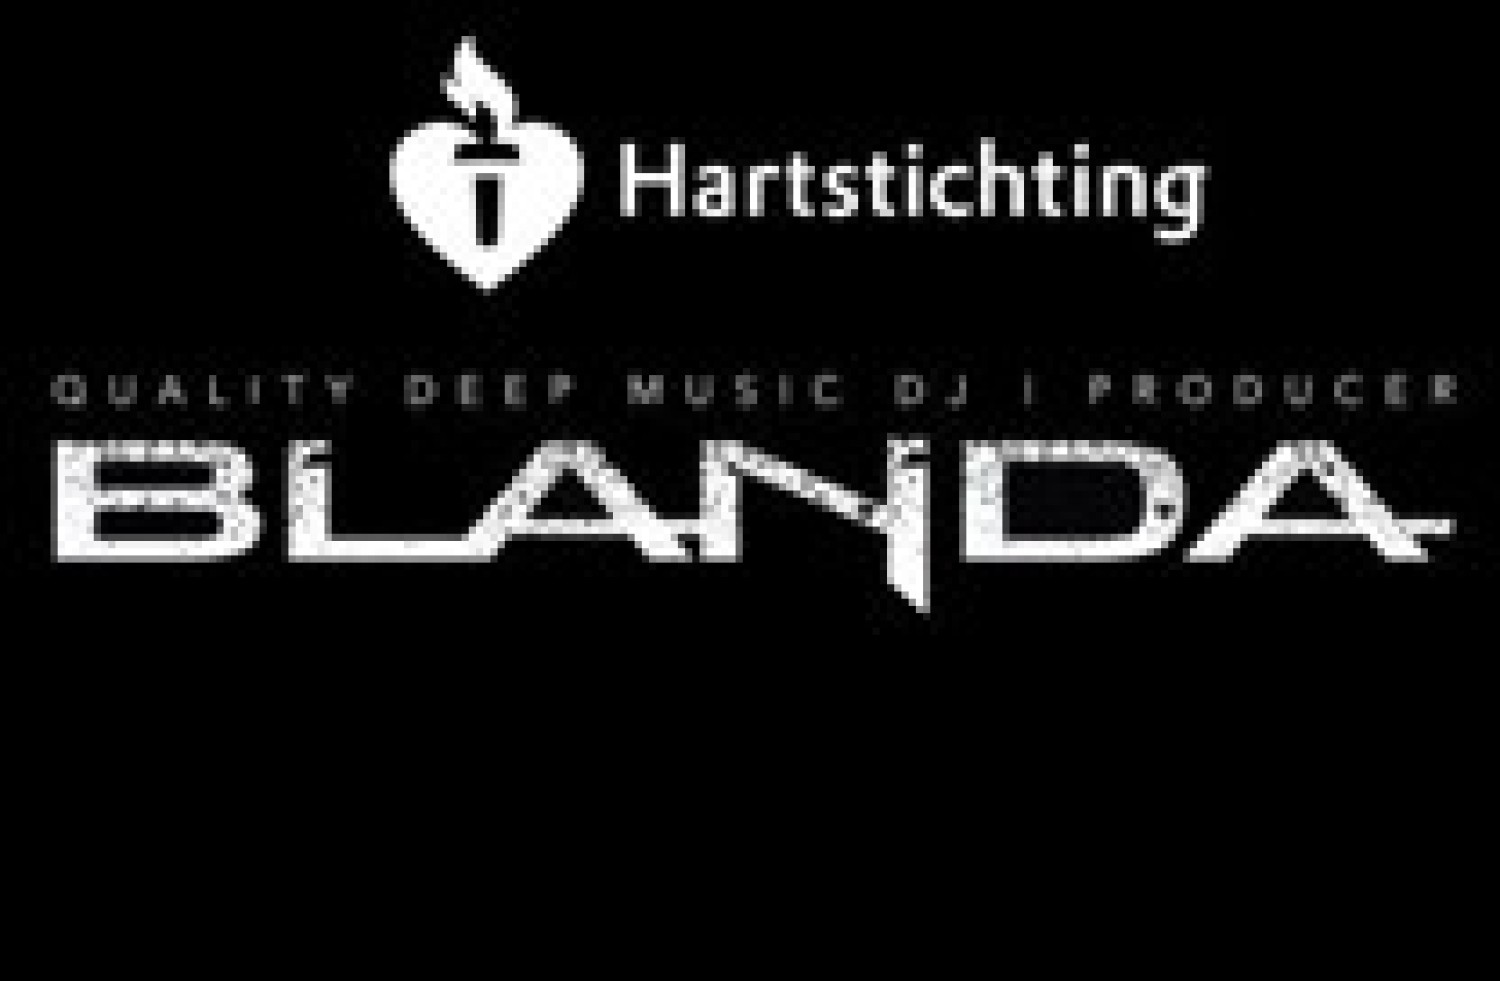 Party report: Blanda all night voor de Hartstichting, Breda (06-01-2017)